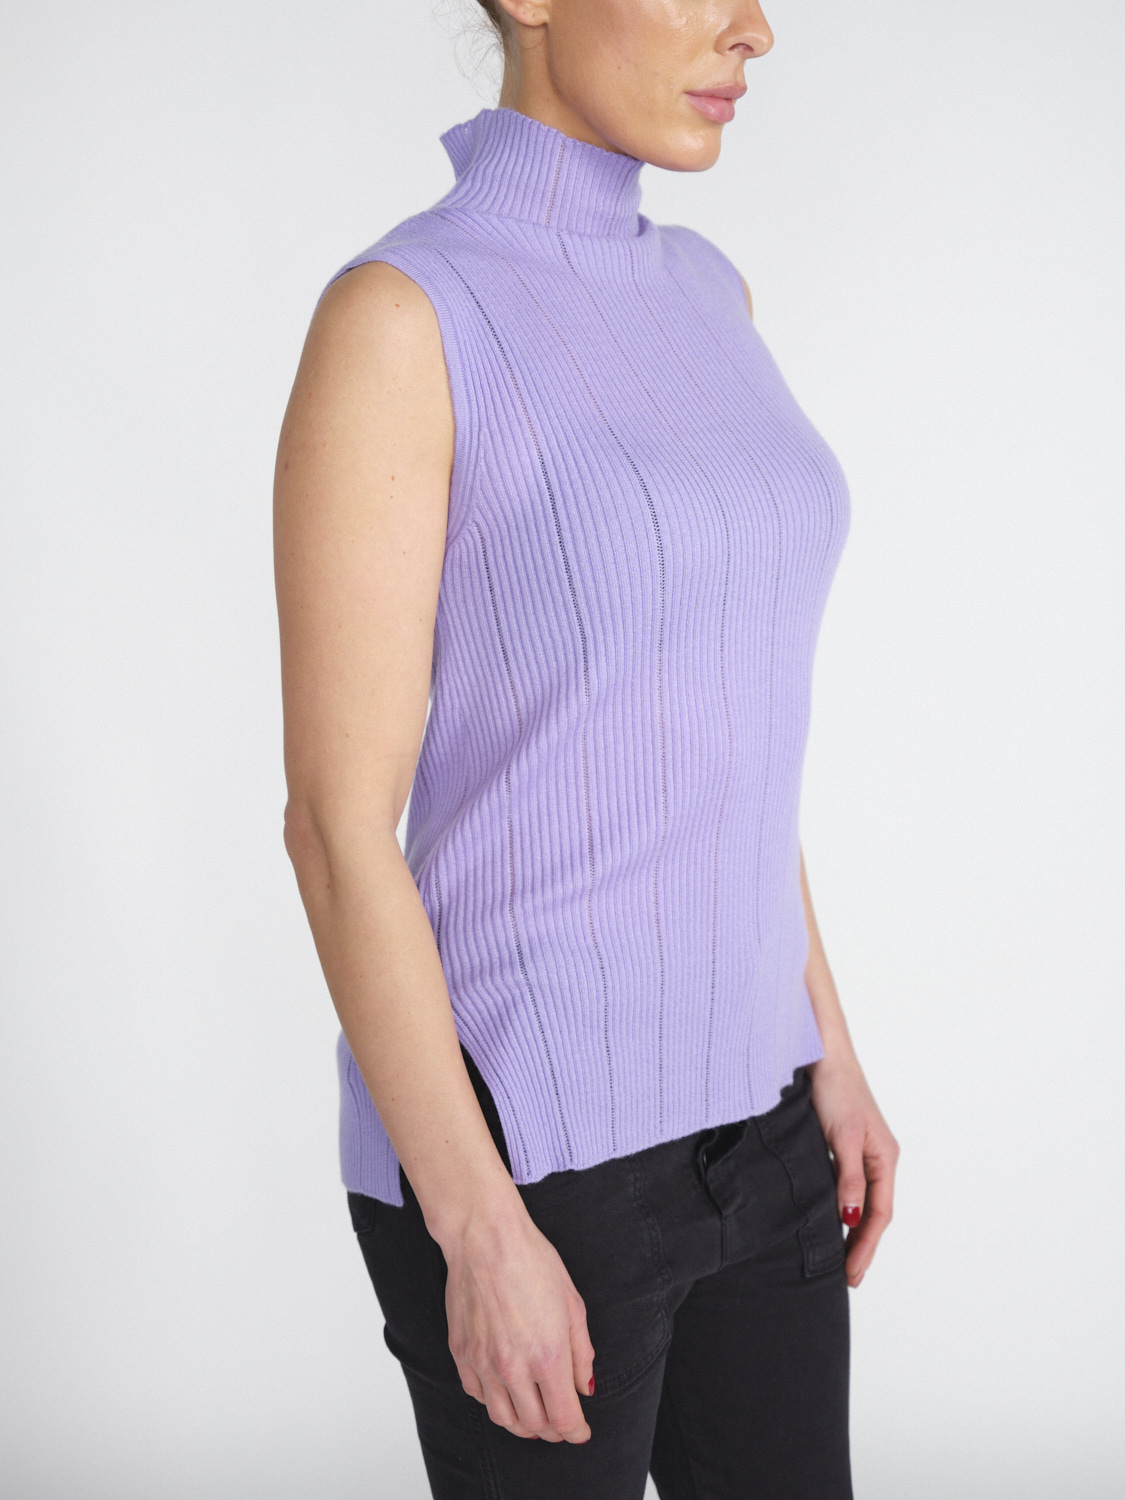 Iris von Arnim Loulou - Top in maglia di misto cashmere e seta  viola M